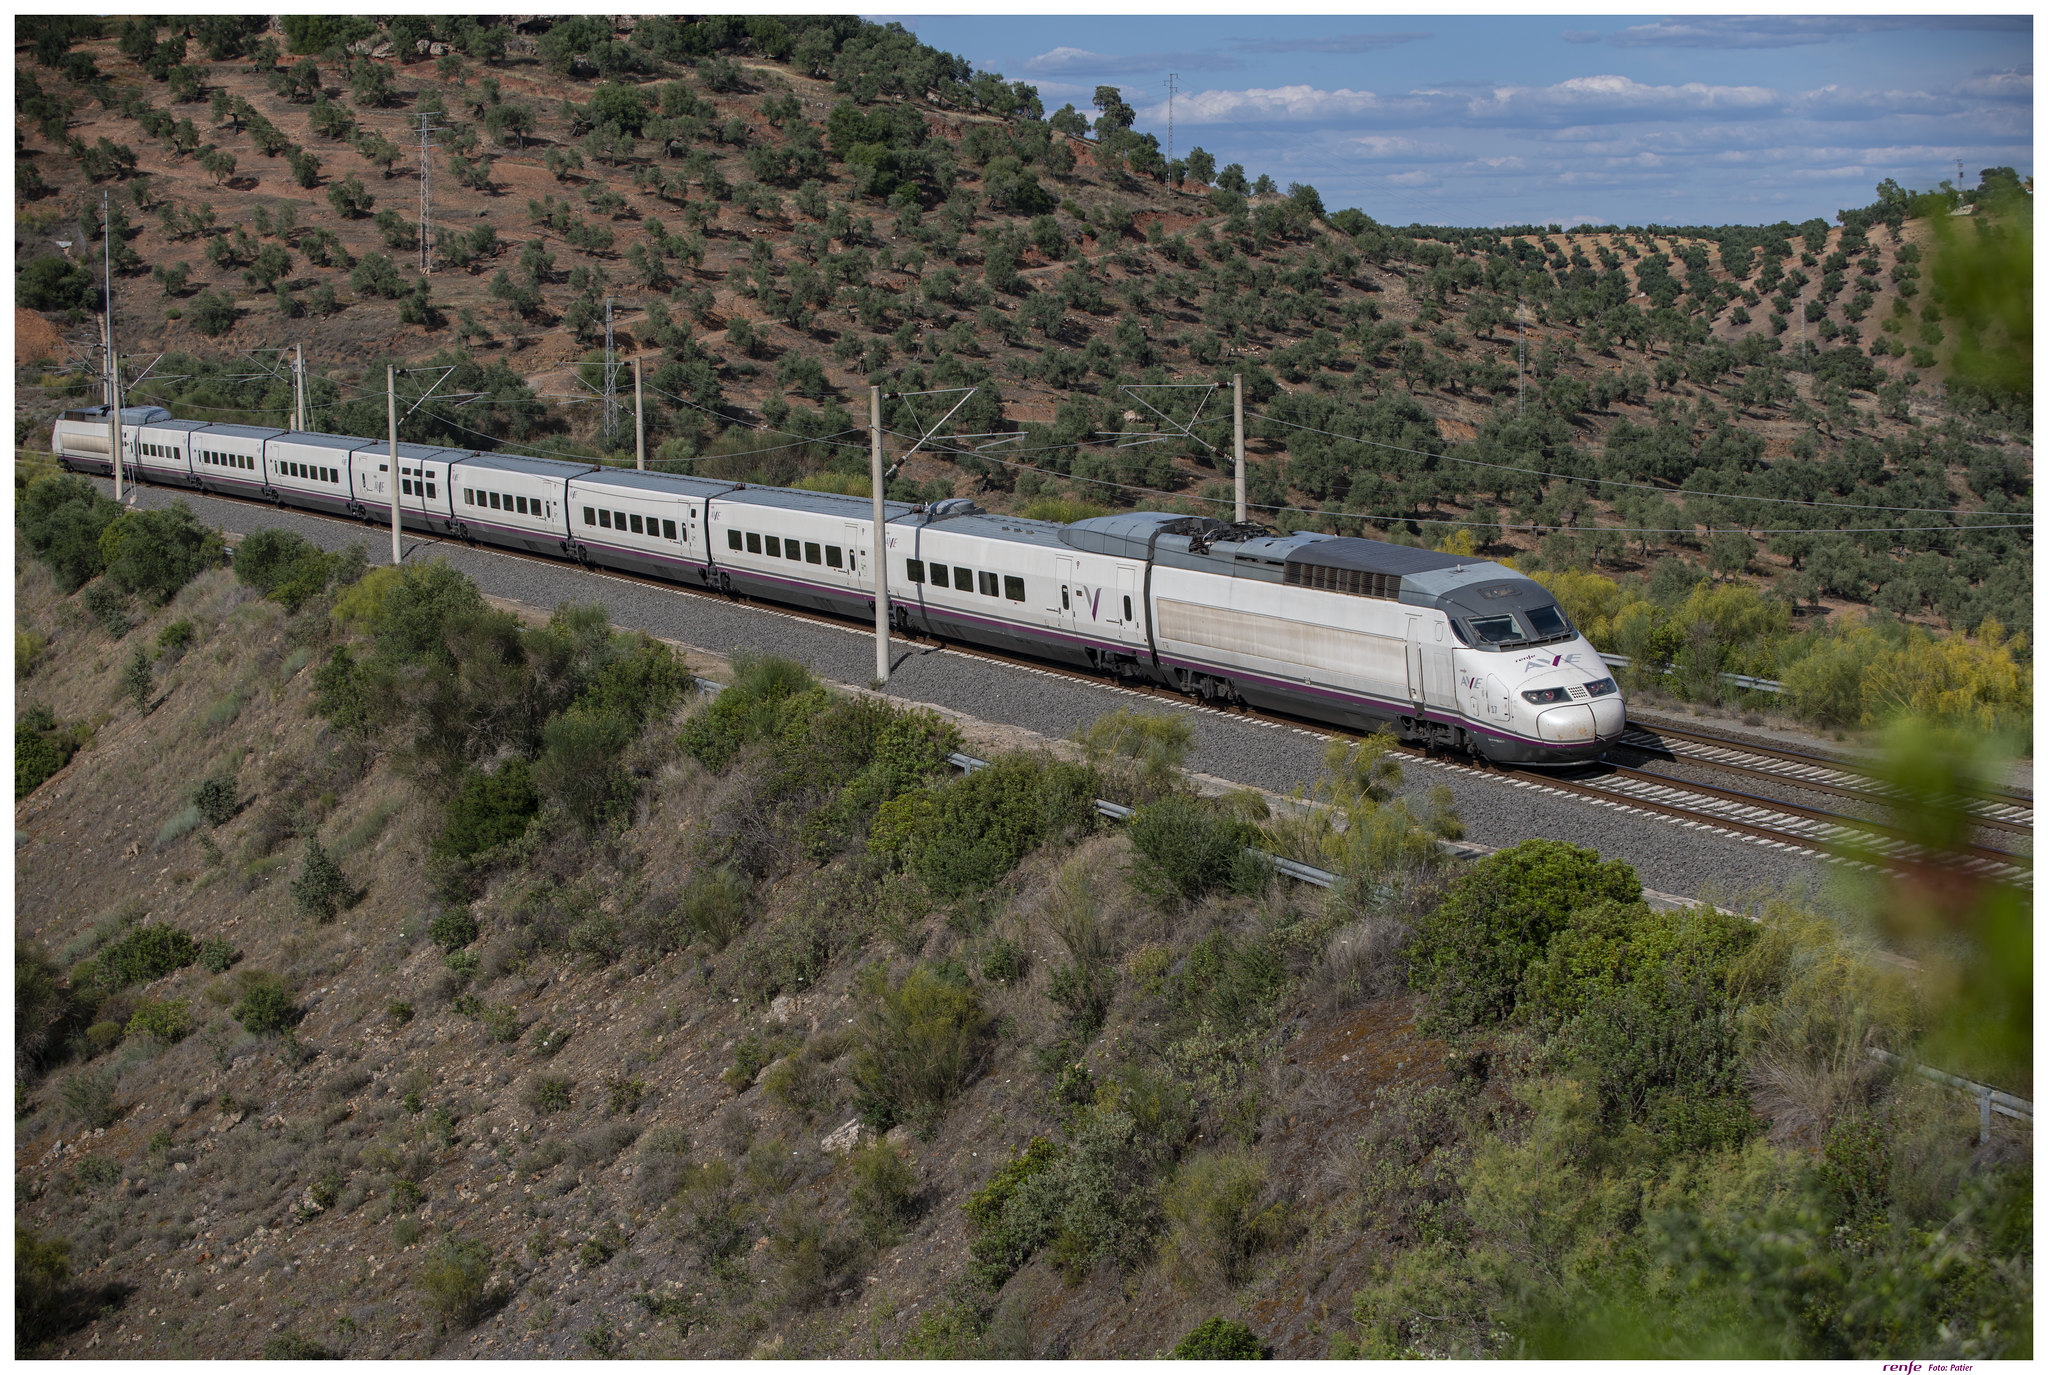 Europe - Le train à grande vitesse AVE Lyon - Barcelone commence à circuler tous les jours